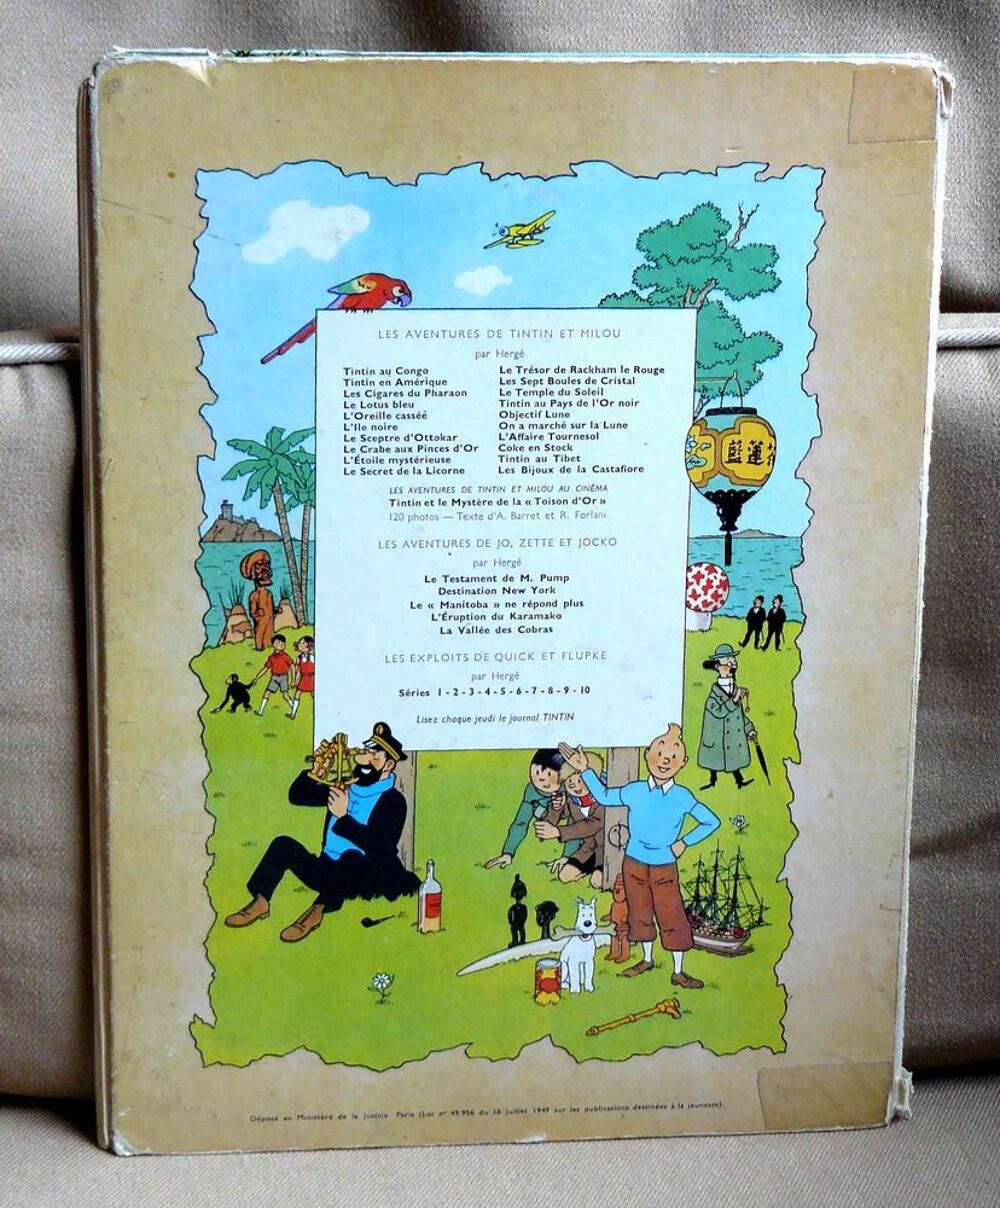 Tintin : le tr&eacute;sor de Rackham le rouge - B35 - 1964 Livres et BD